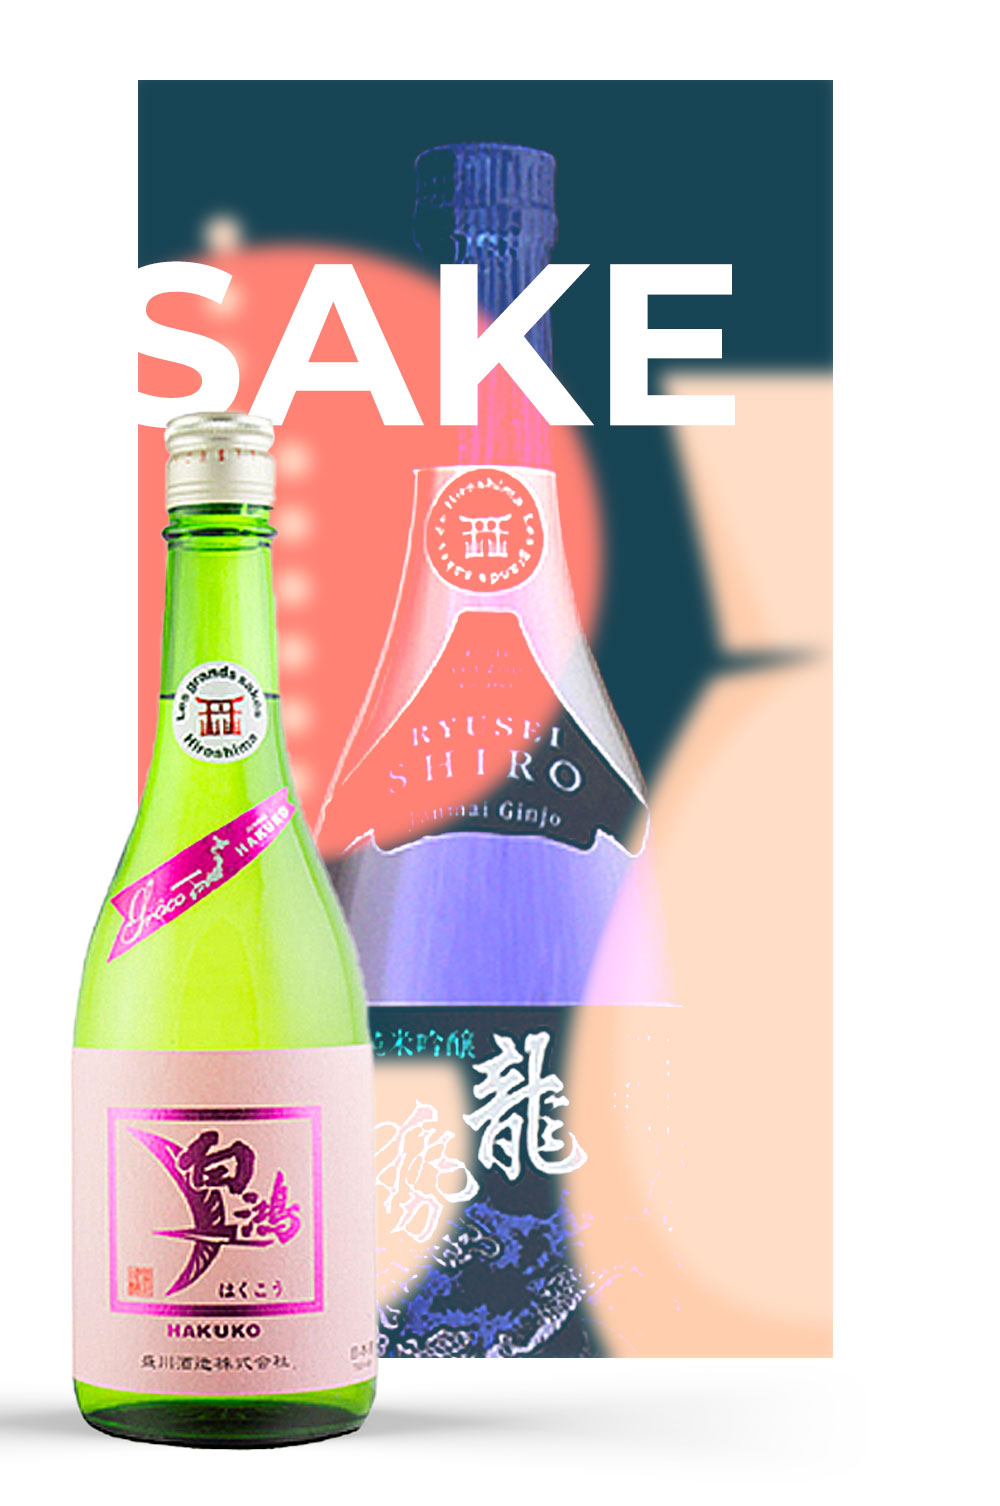 Le merveilleux monde du saké: La Production du sake